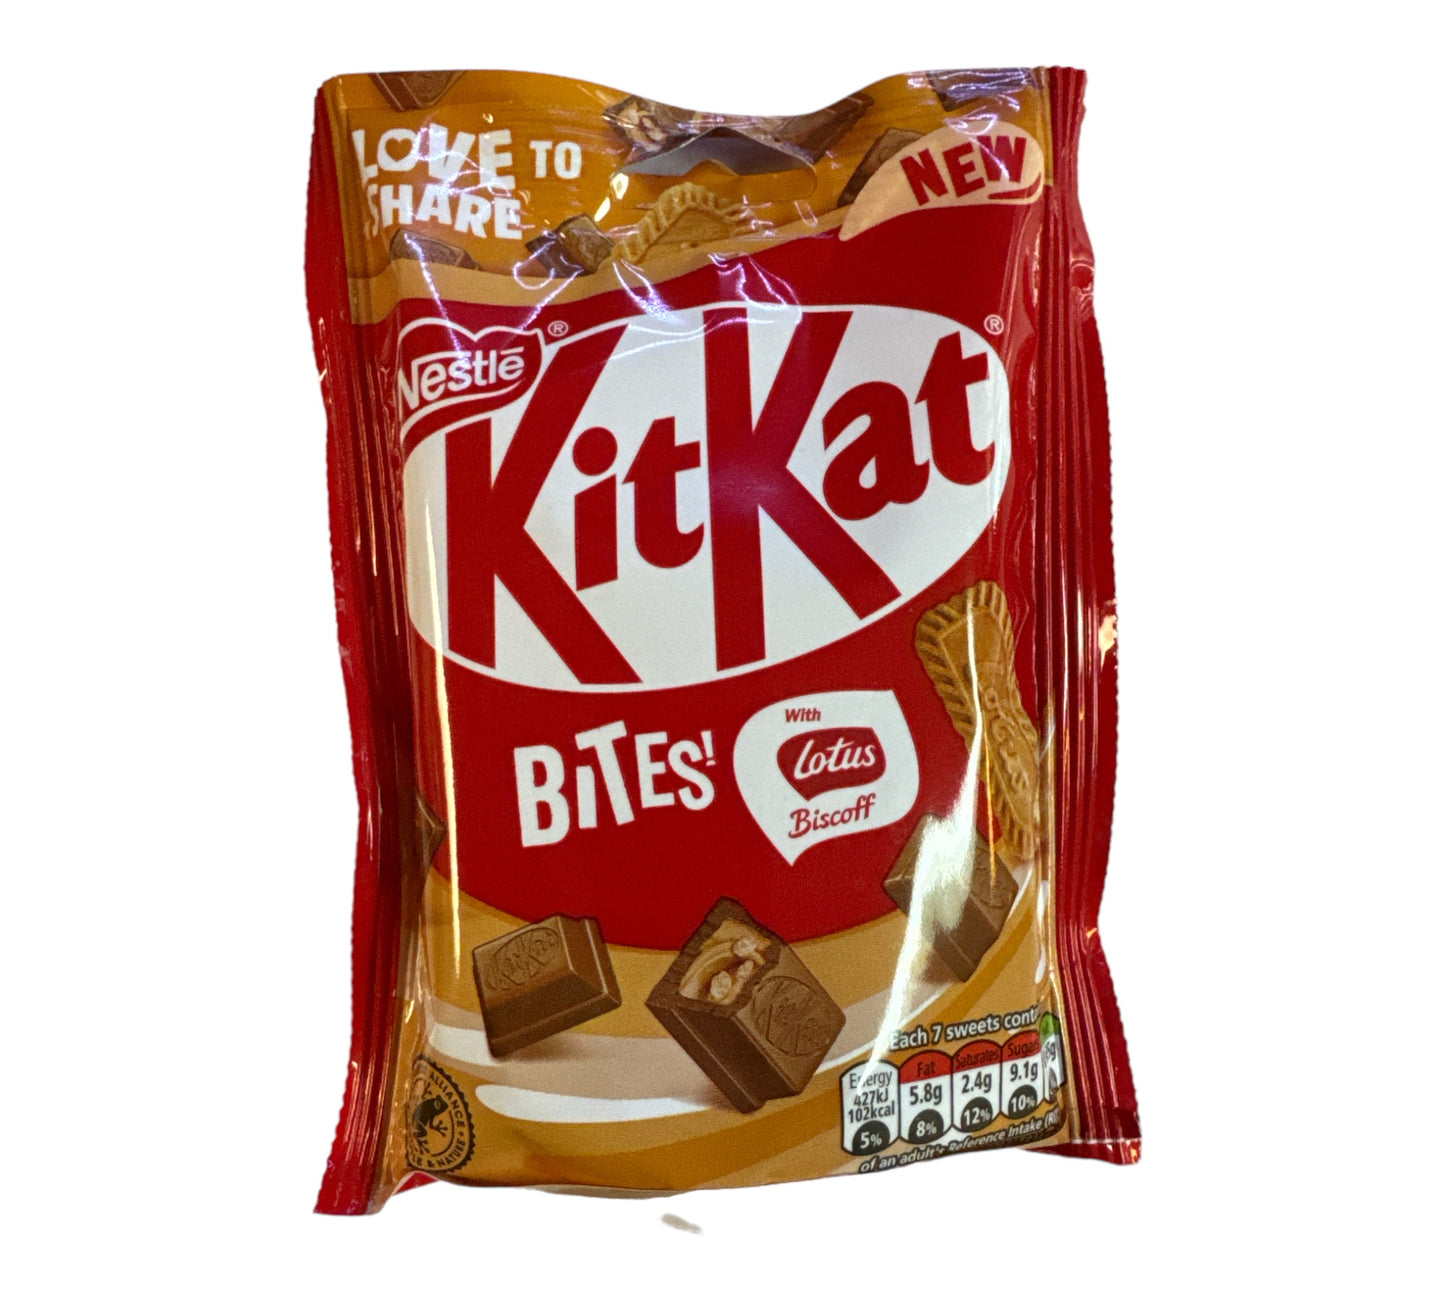 Kit Kat Bites Lotus Biscoff (UK)